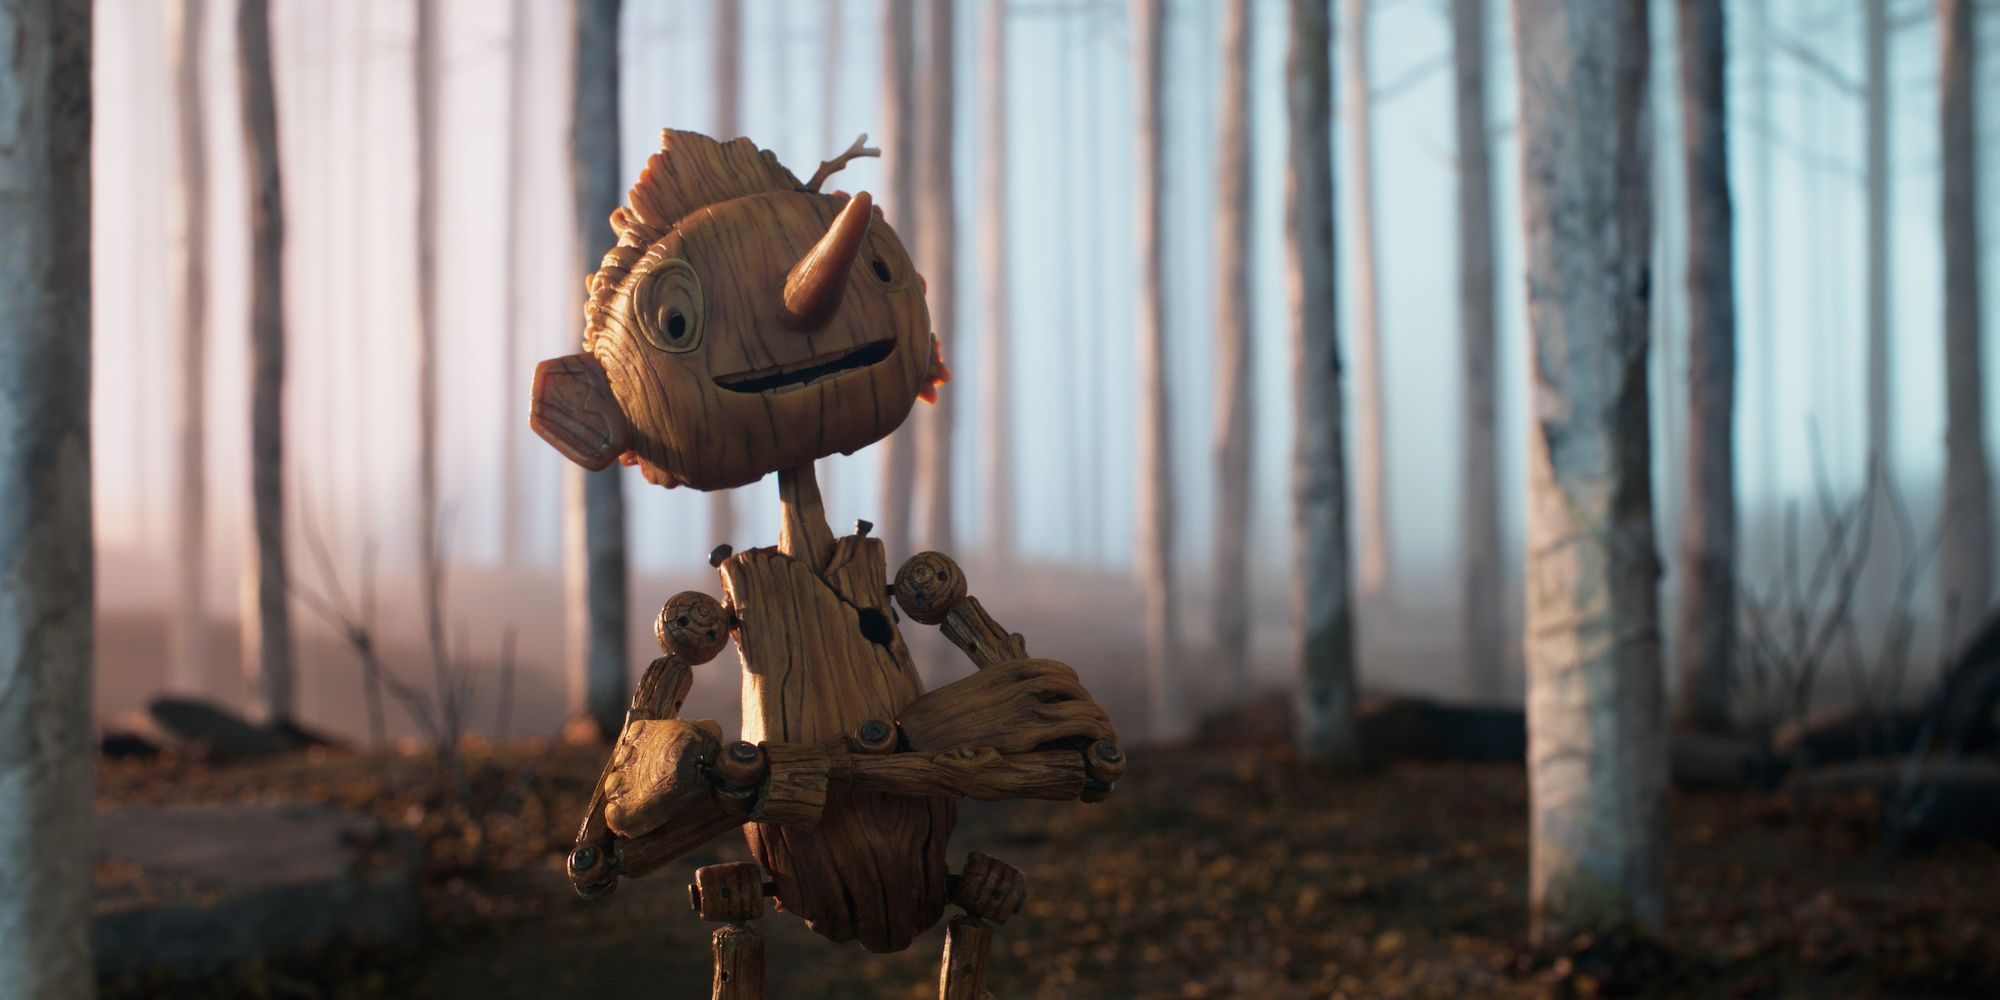 Pinocchio in the Guillermo del Toro Netflix movie.